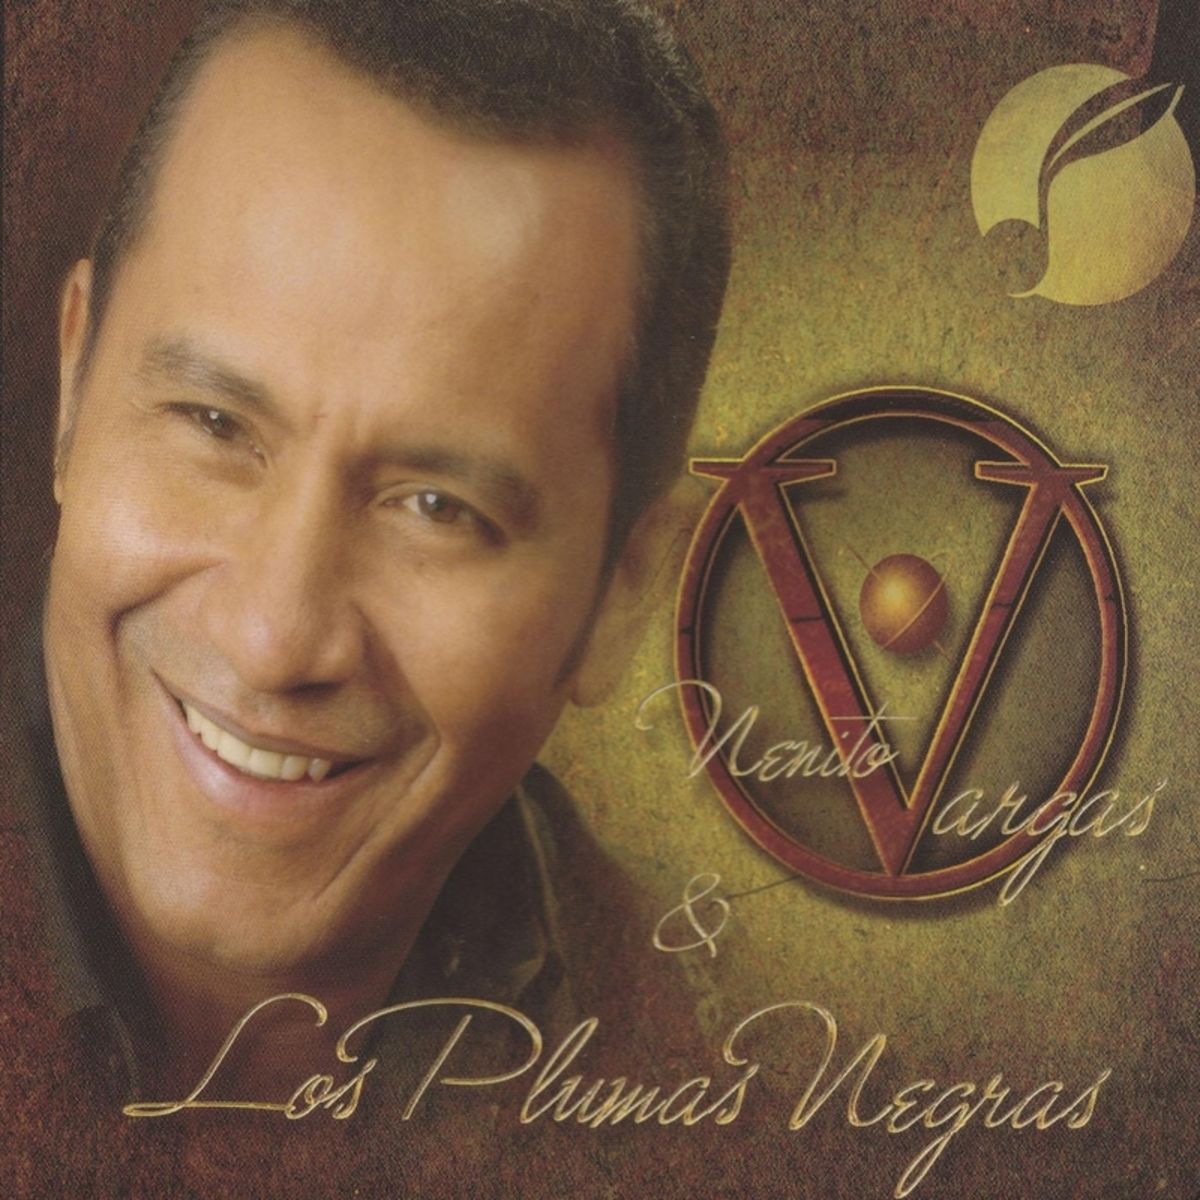 1 - Nenito Vargas y los Plumas Negras - Eres Lo Que Yo Mas Quiero.mp3